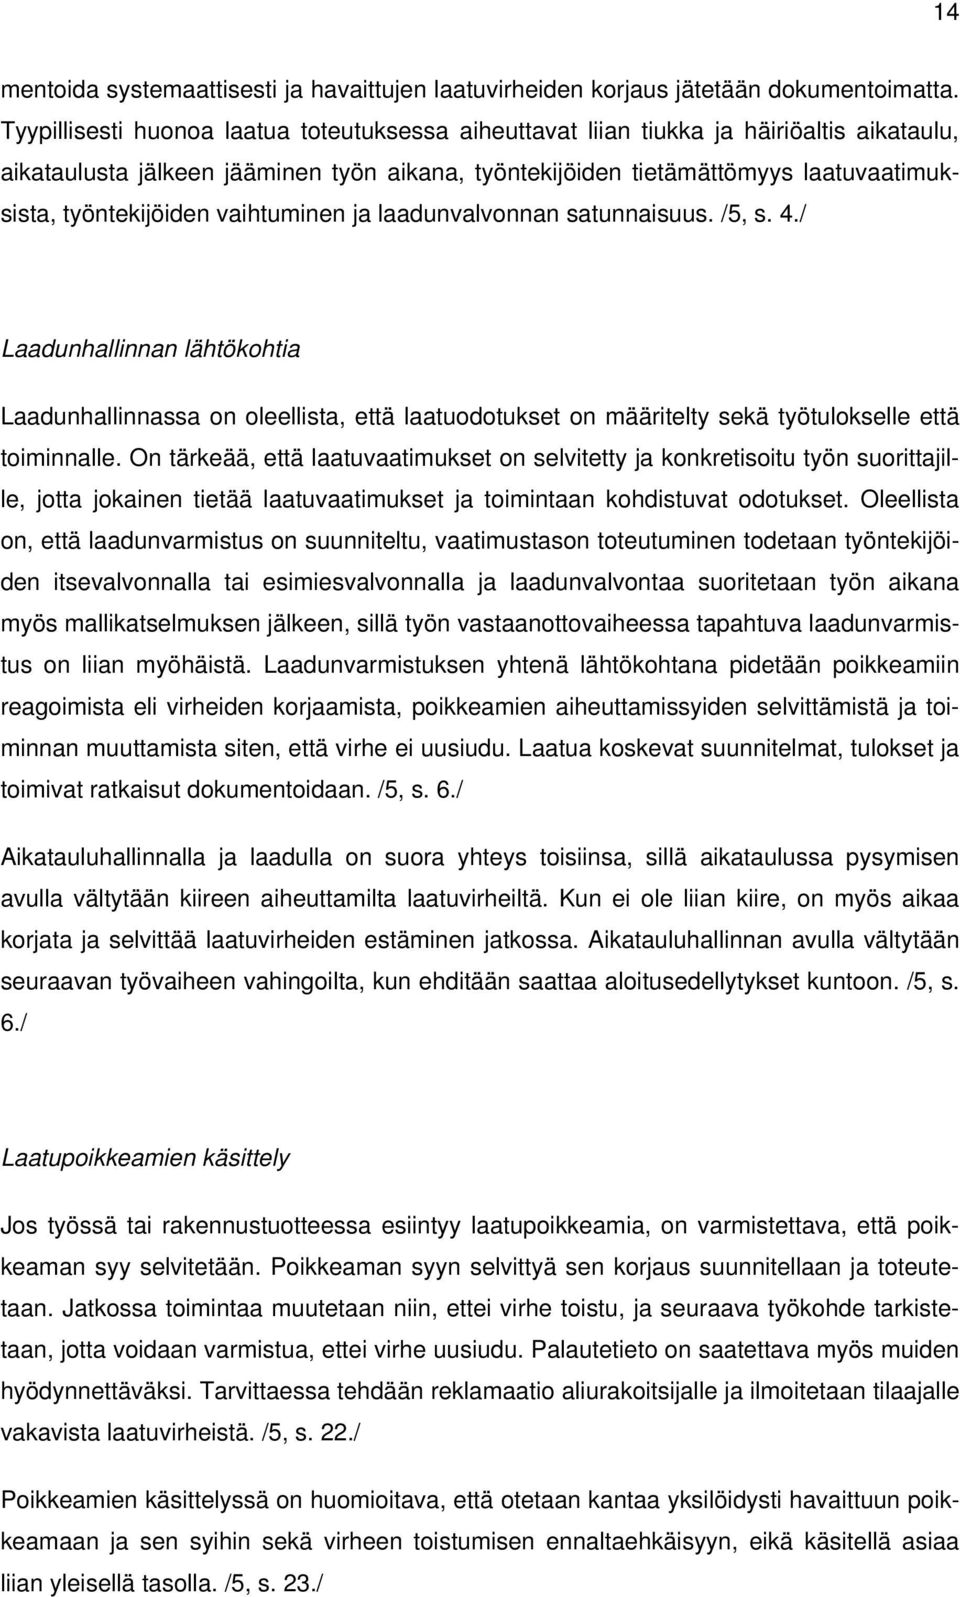 työntekijöiden vaihtuminen ja laadunvalvonnan satunnaisuus. /5, s. 4.